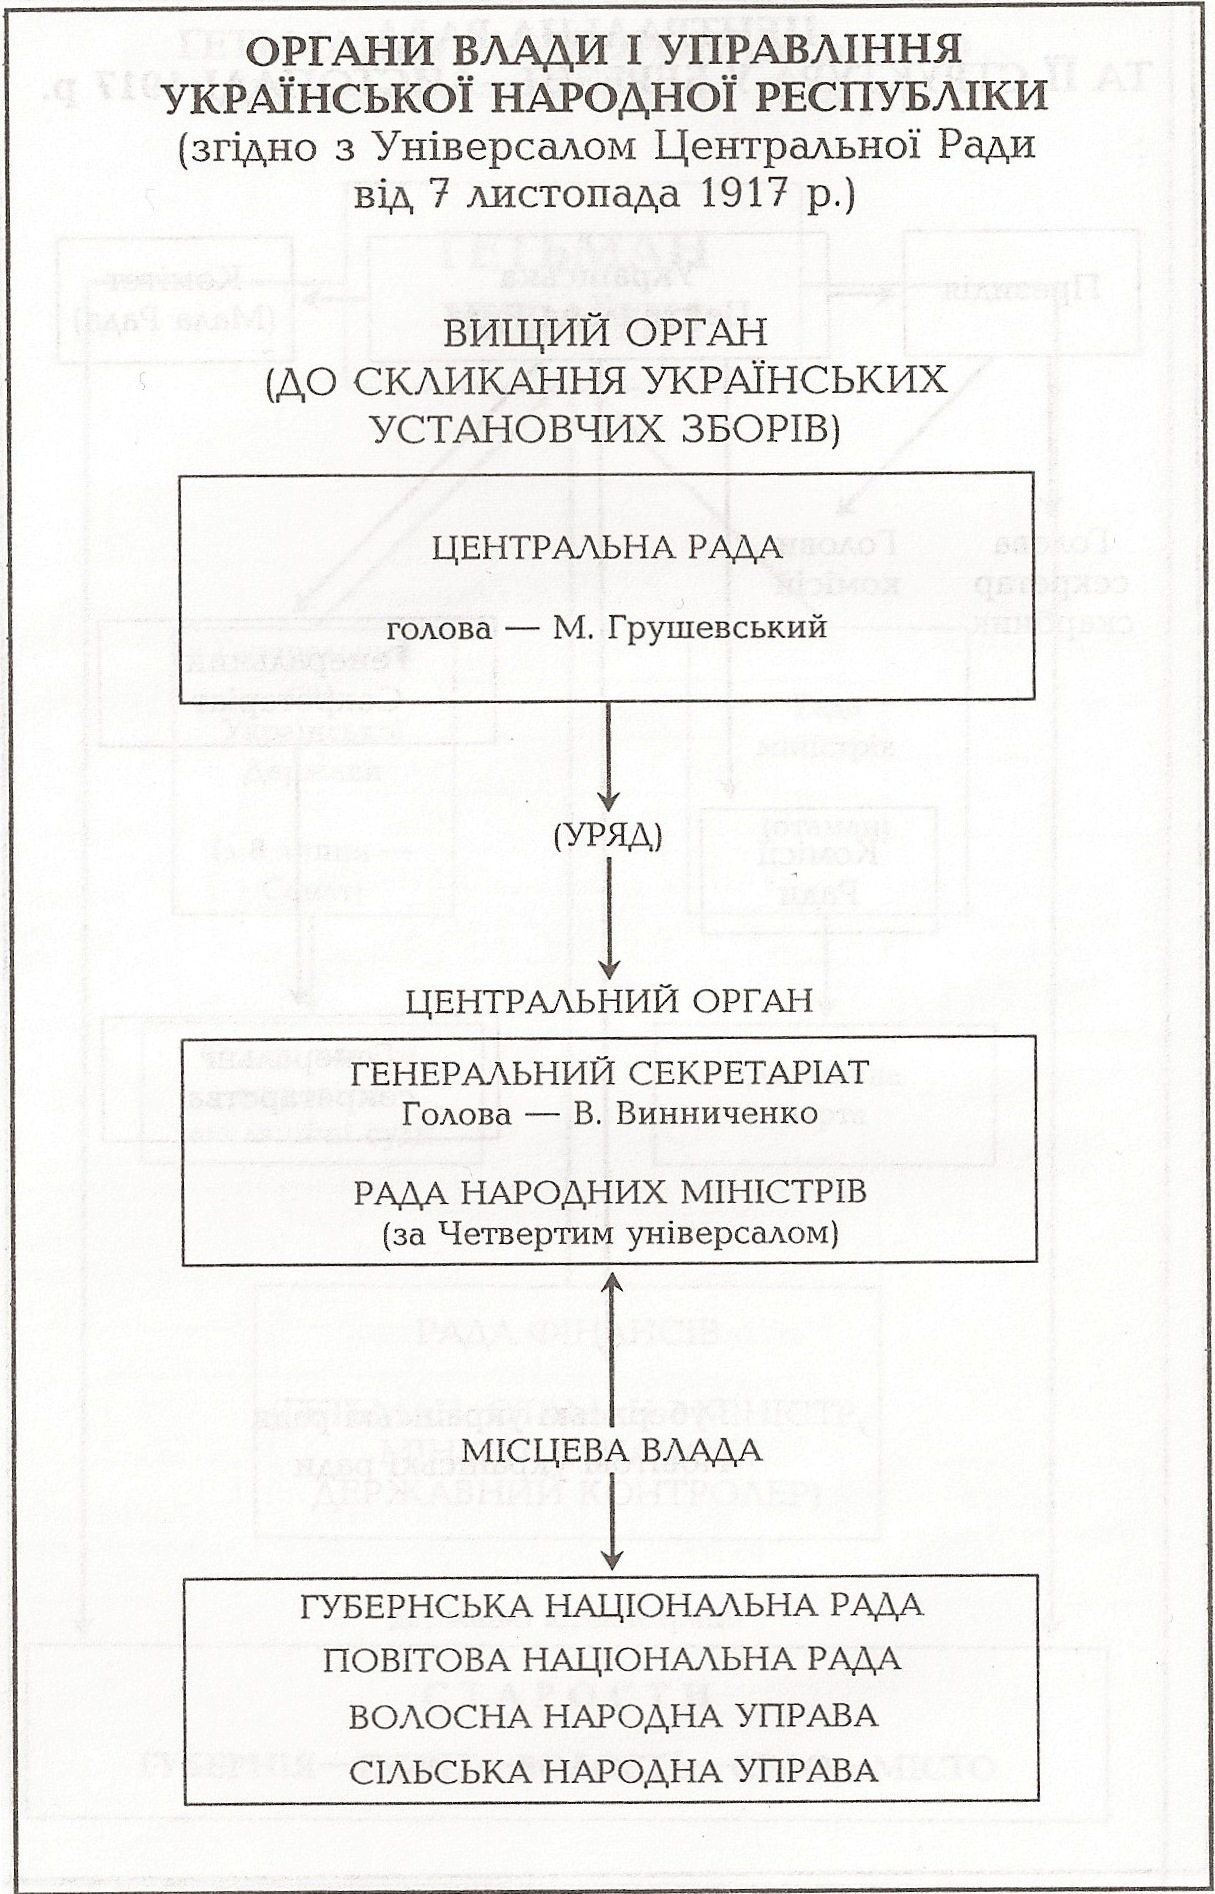 Таблица: Органы власти и управления Украинской Народной Республики (согласно Универсалу Центральной Рады от 7 ноября 1917)